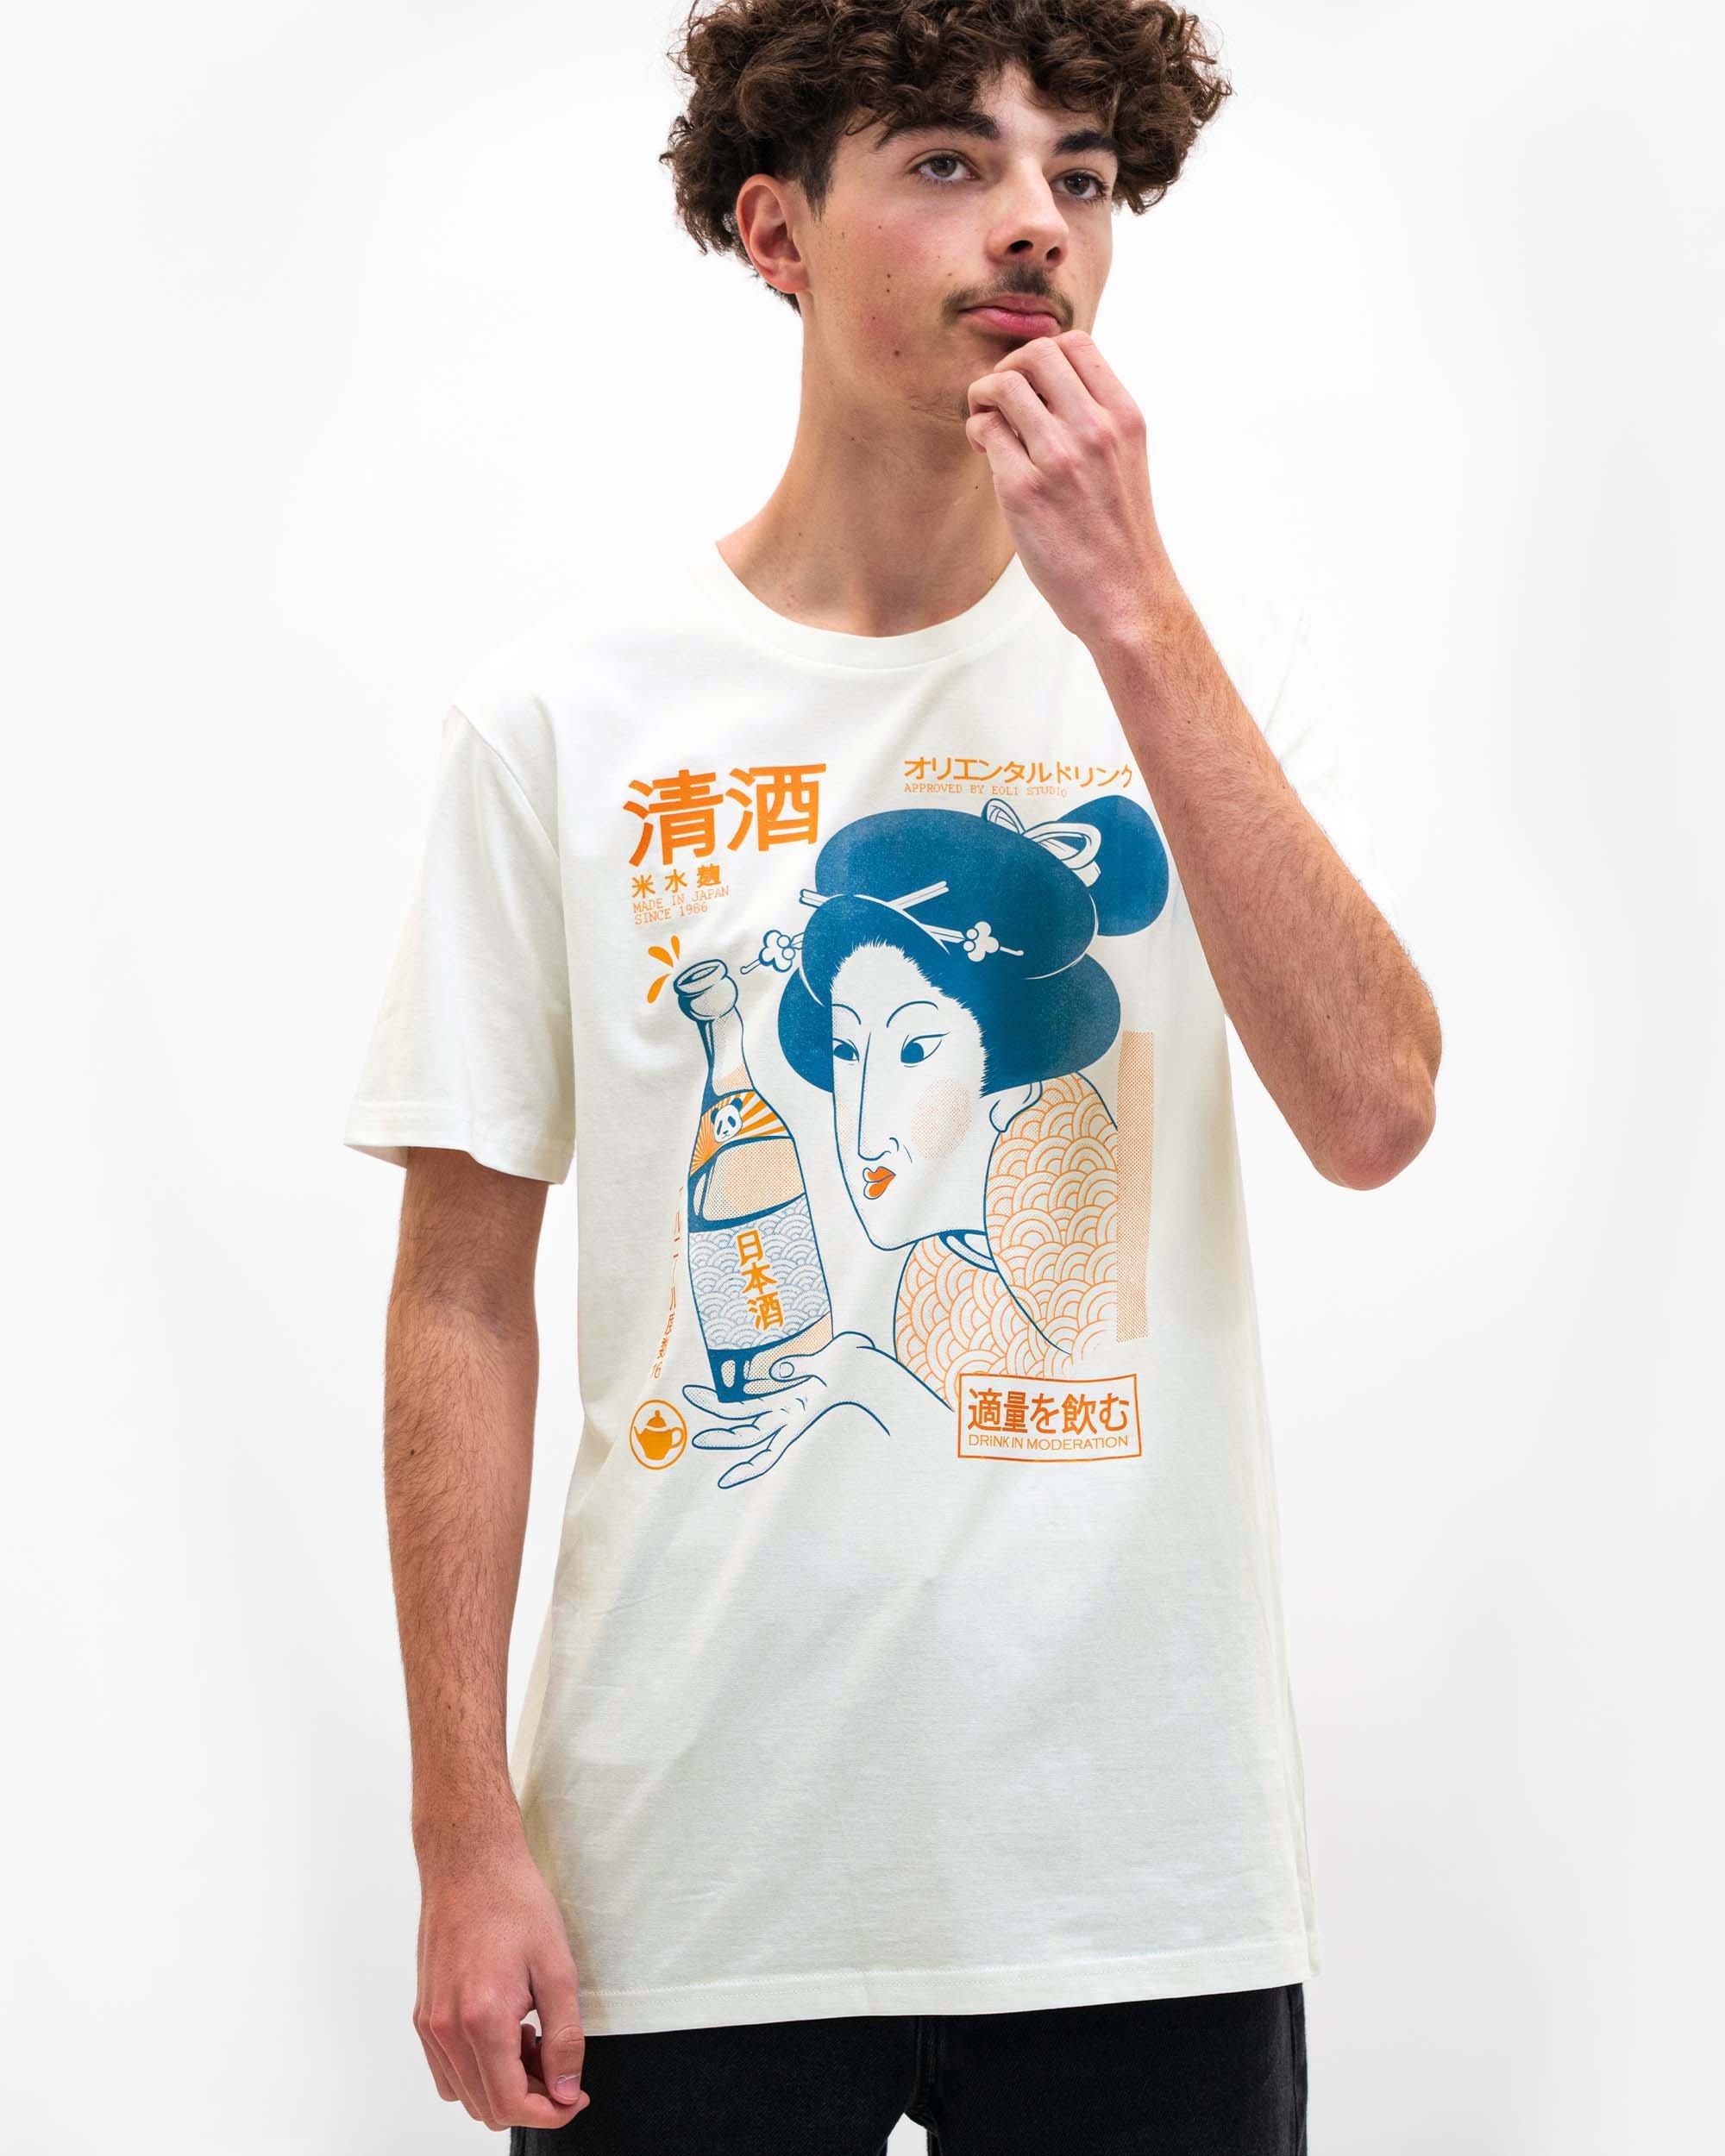 T-shirt Sake Geisha Grafitee